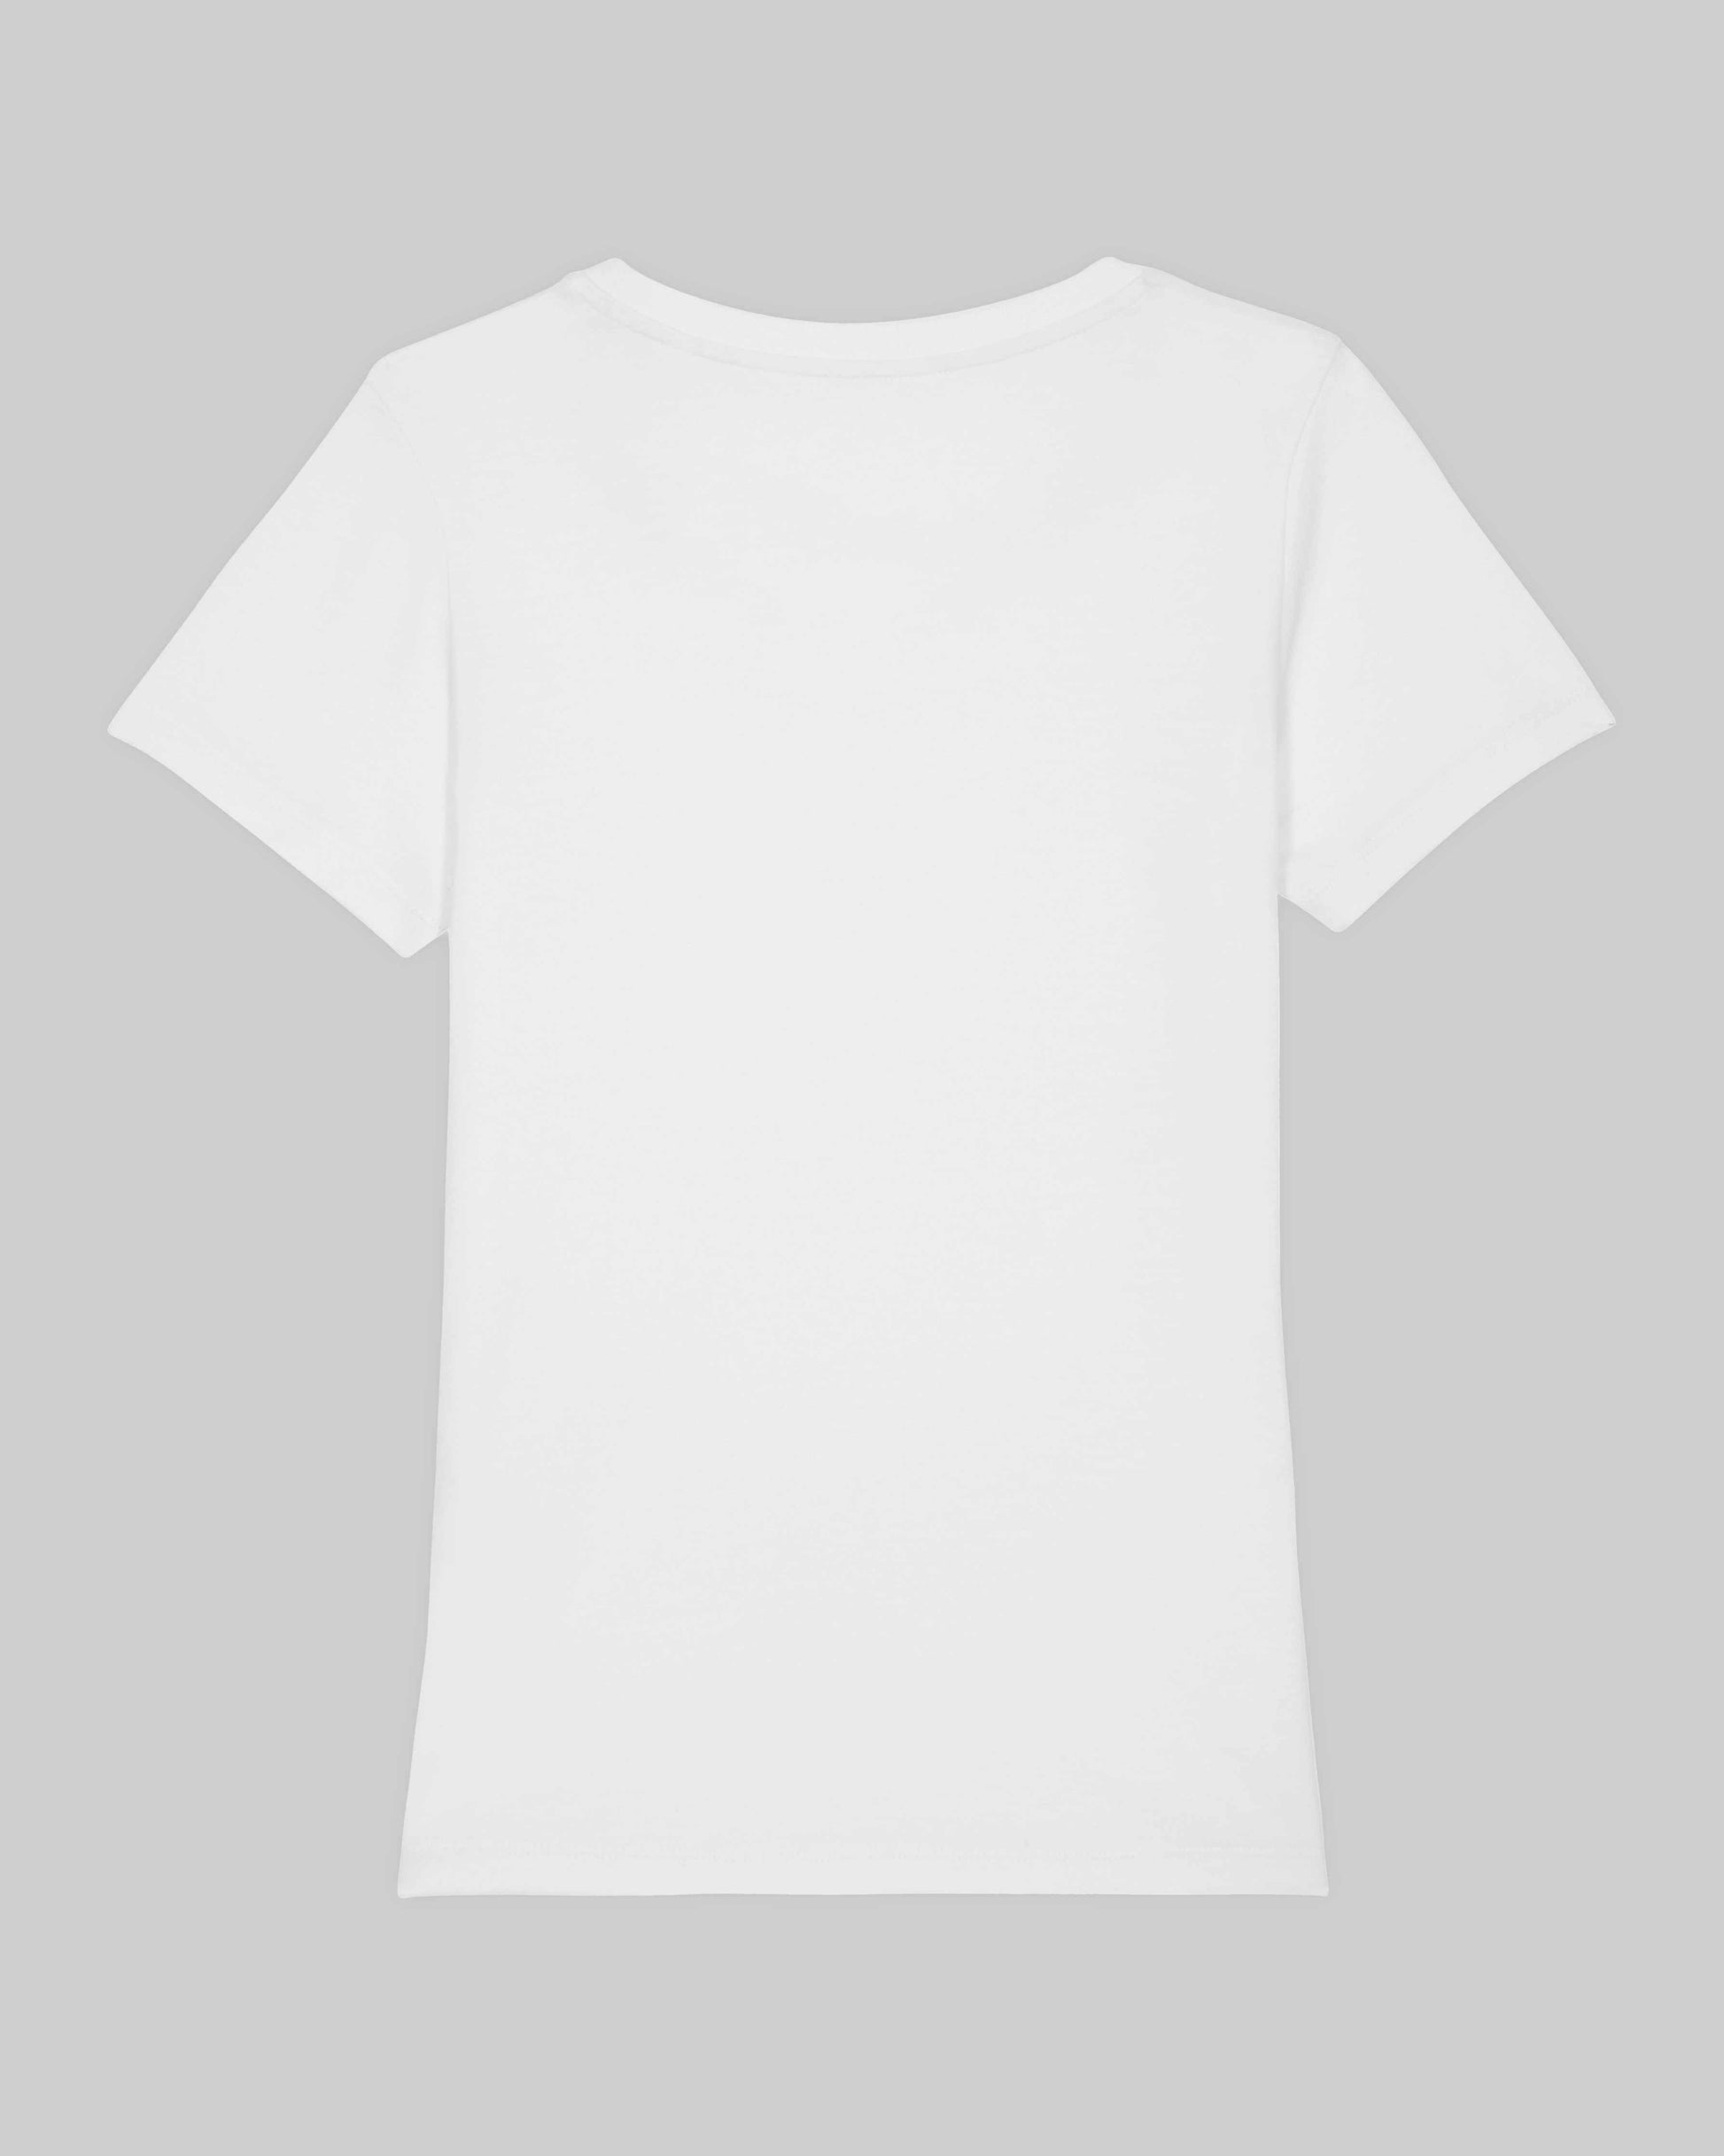 EINHORST® Organic Shirt tailliert in "Weiß" mit dem Motiv "lgbtq+ Regenbogen" in der Kombination schwarzer Regenbogen mit schwarzer Schrift, Bild von Shirt von hinten